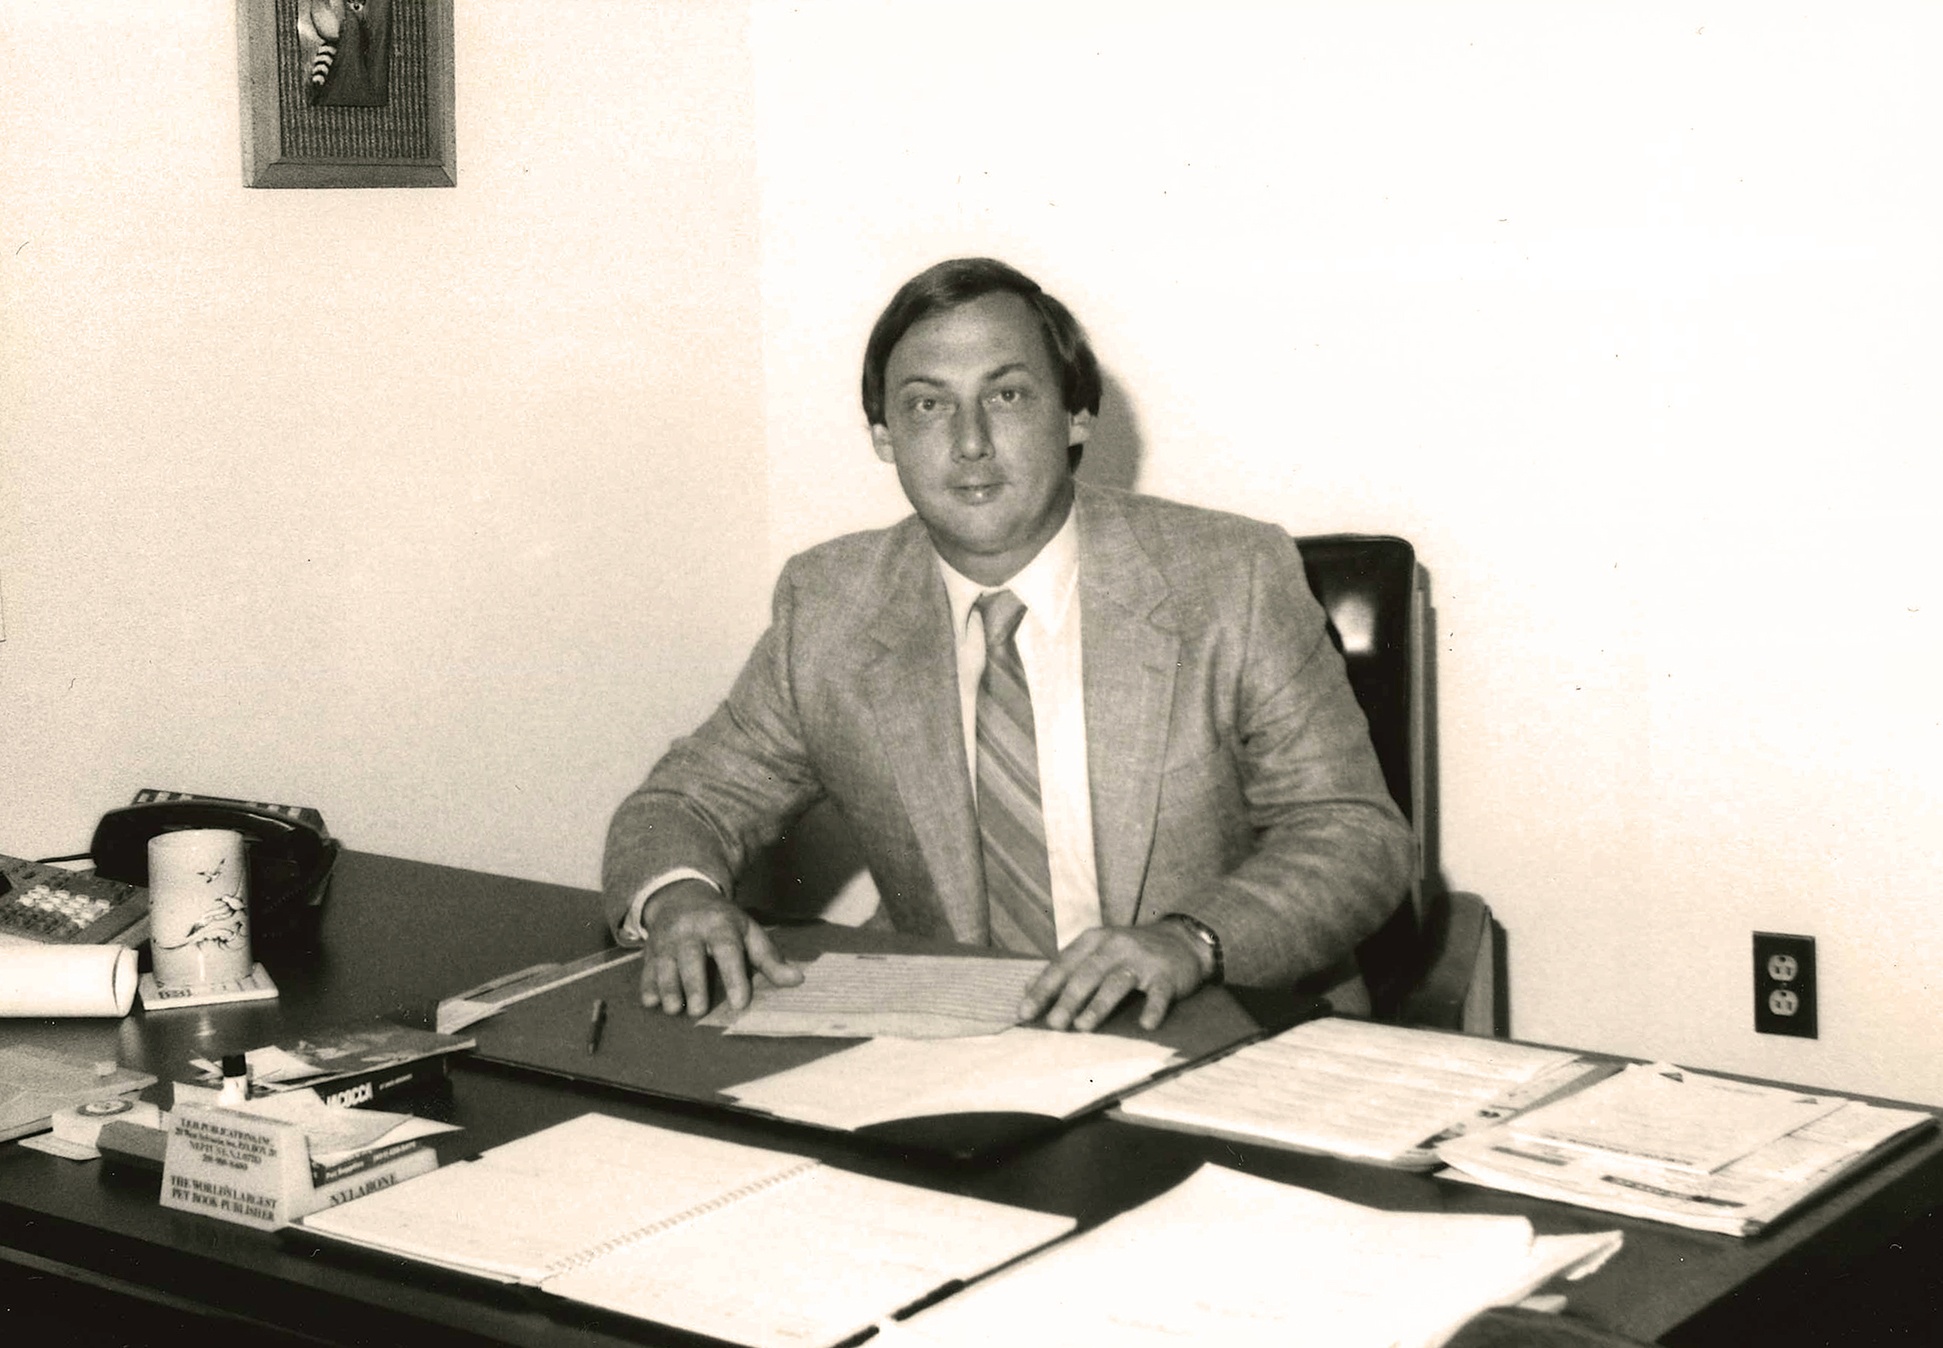 Buddy Baker at Desk - 1970's